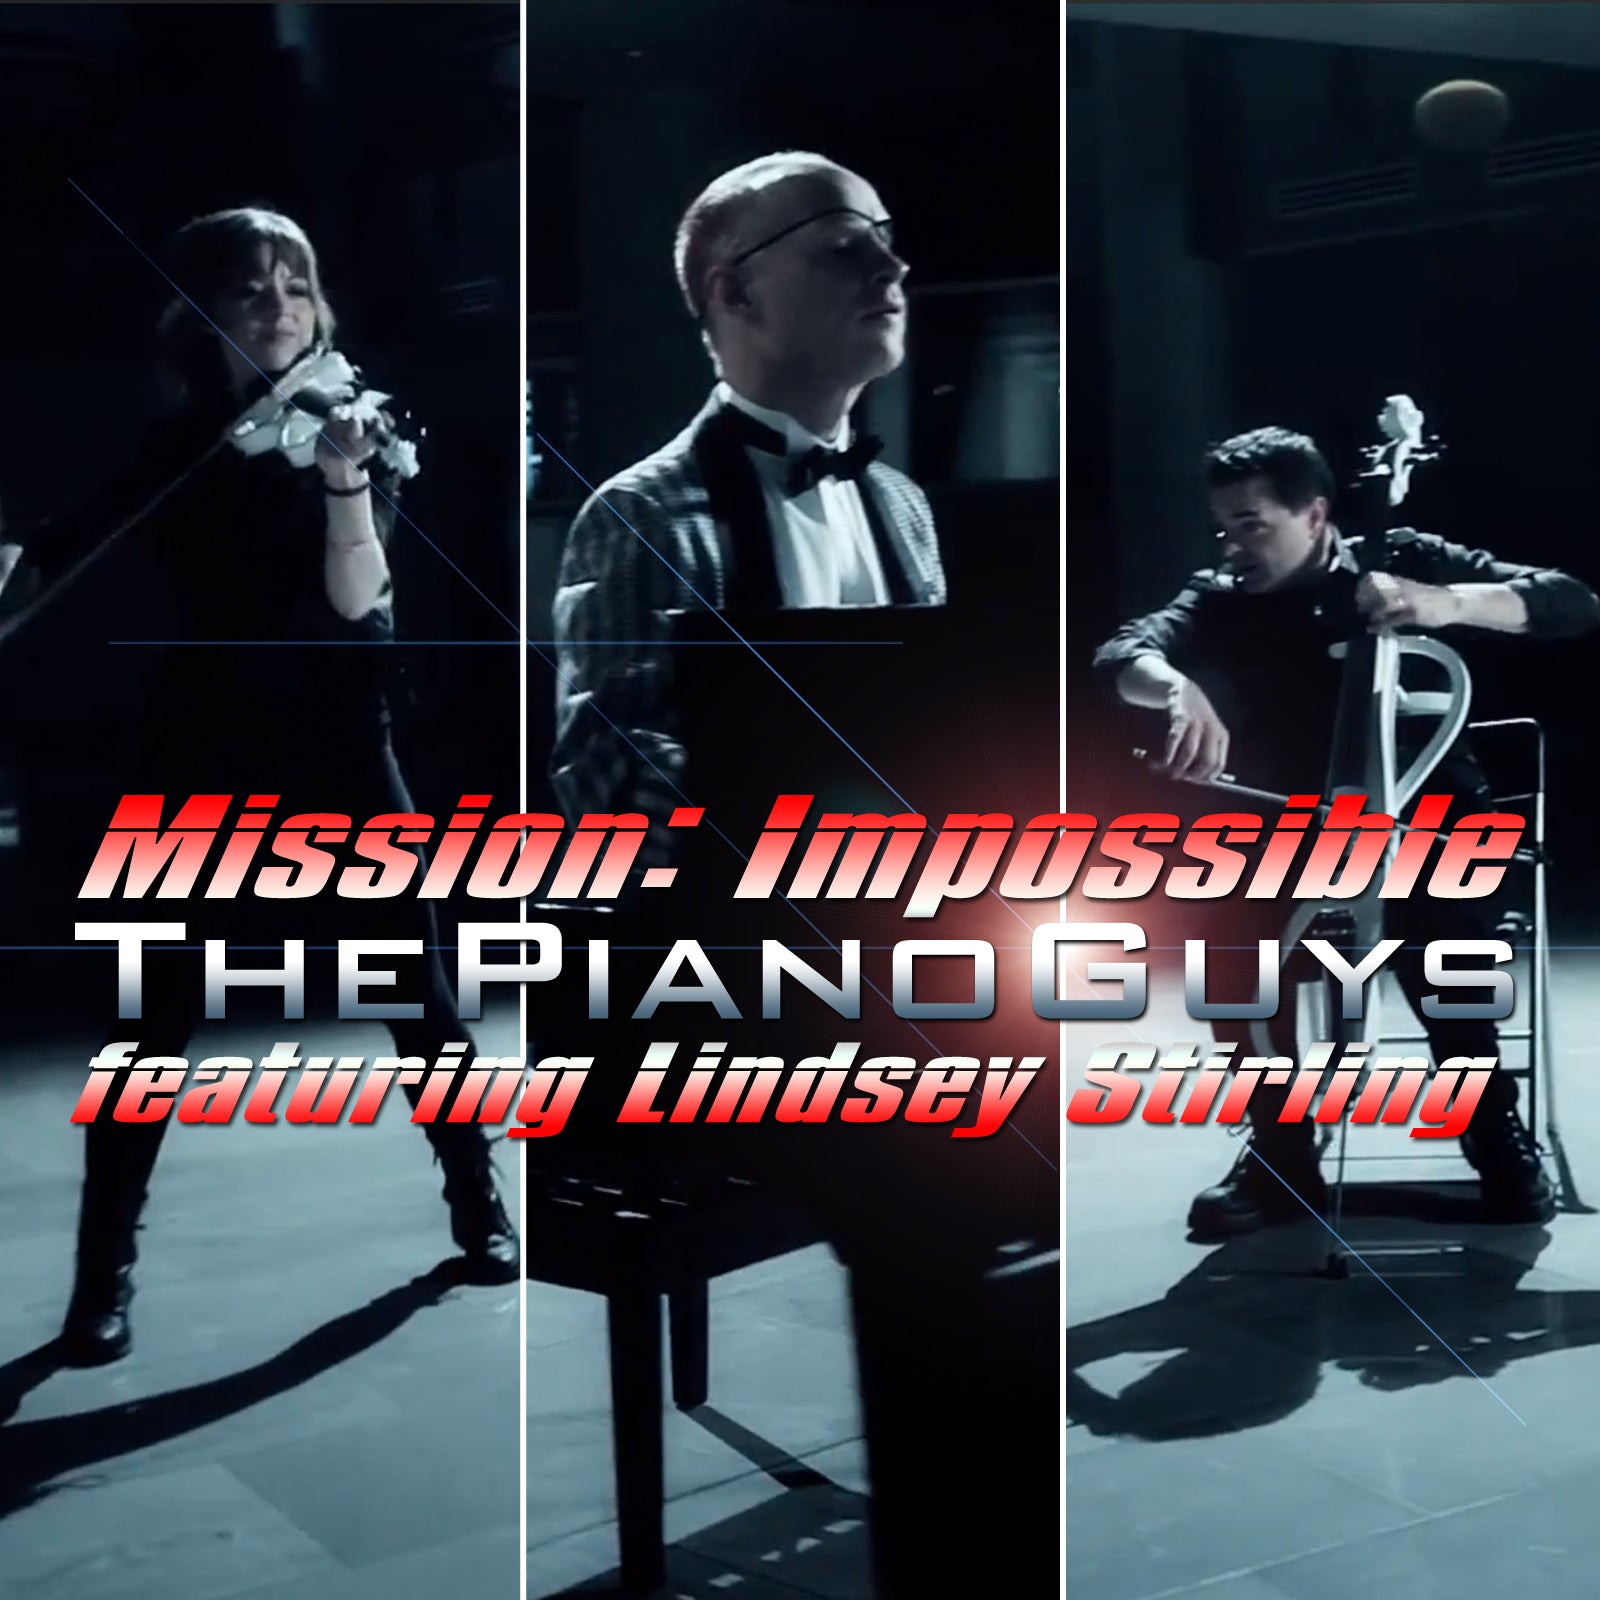 Я задержу дыхание все невозможно песня. The Piano guys. Миссия невыполнима на пианино. Mission Impossible Piano. The Piano guys Mission Impossible Ноты.